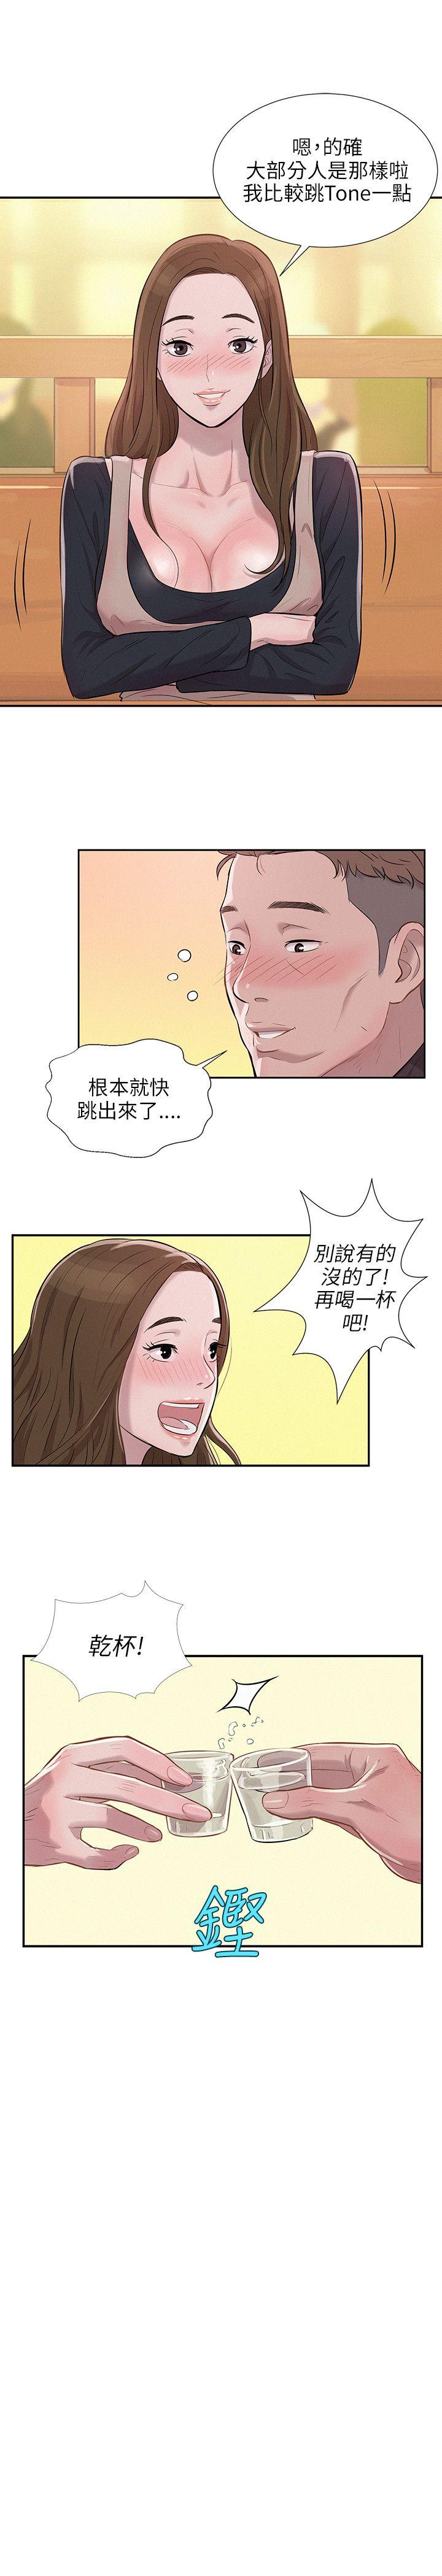 韩国污漫画 新生日記 第3话似曾相识 21